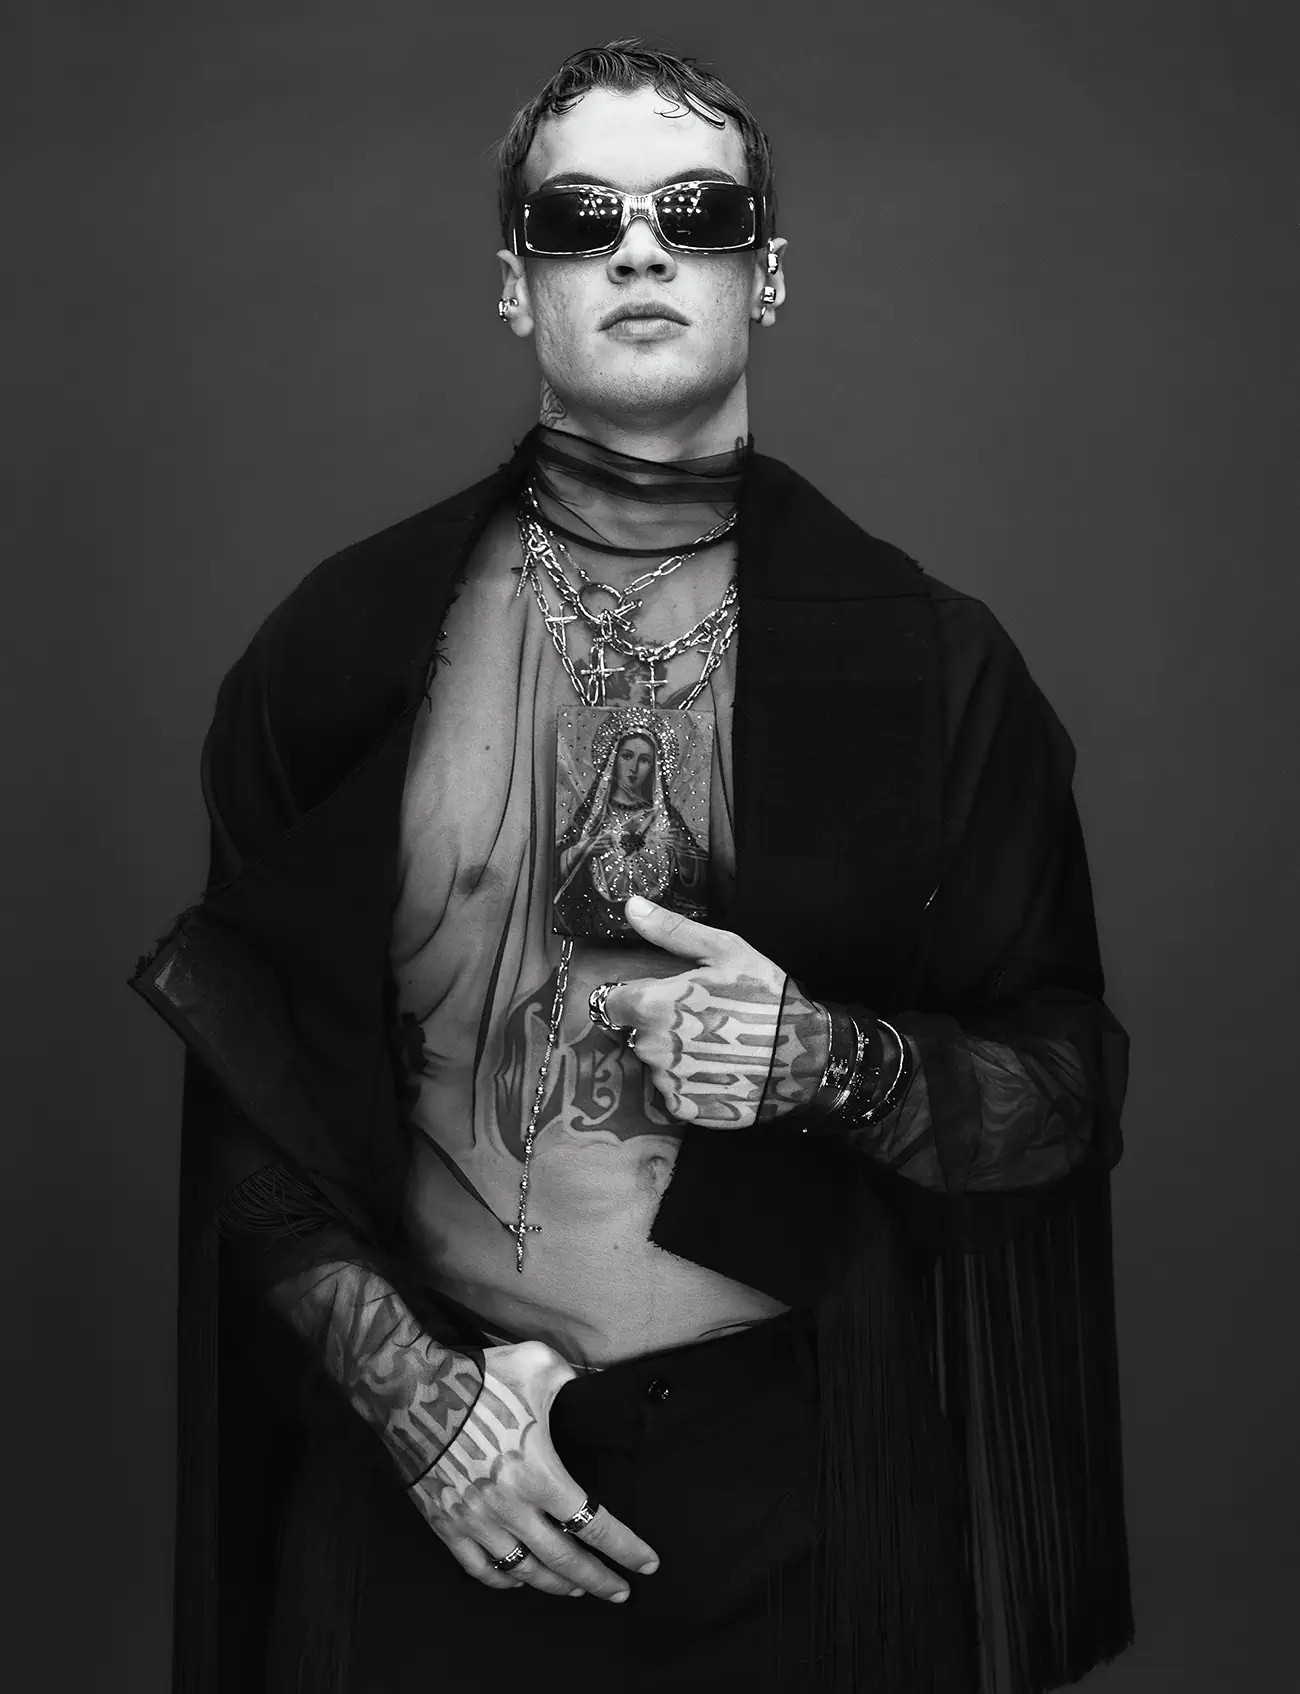 BLANCO in Dolce & Gabbana on VMan Fall Winter 2023 Digital Edition by Steven Klein